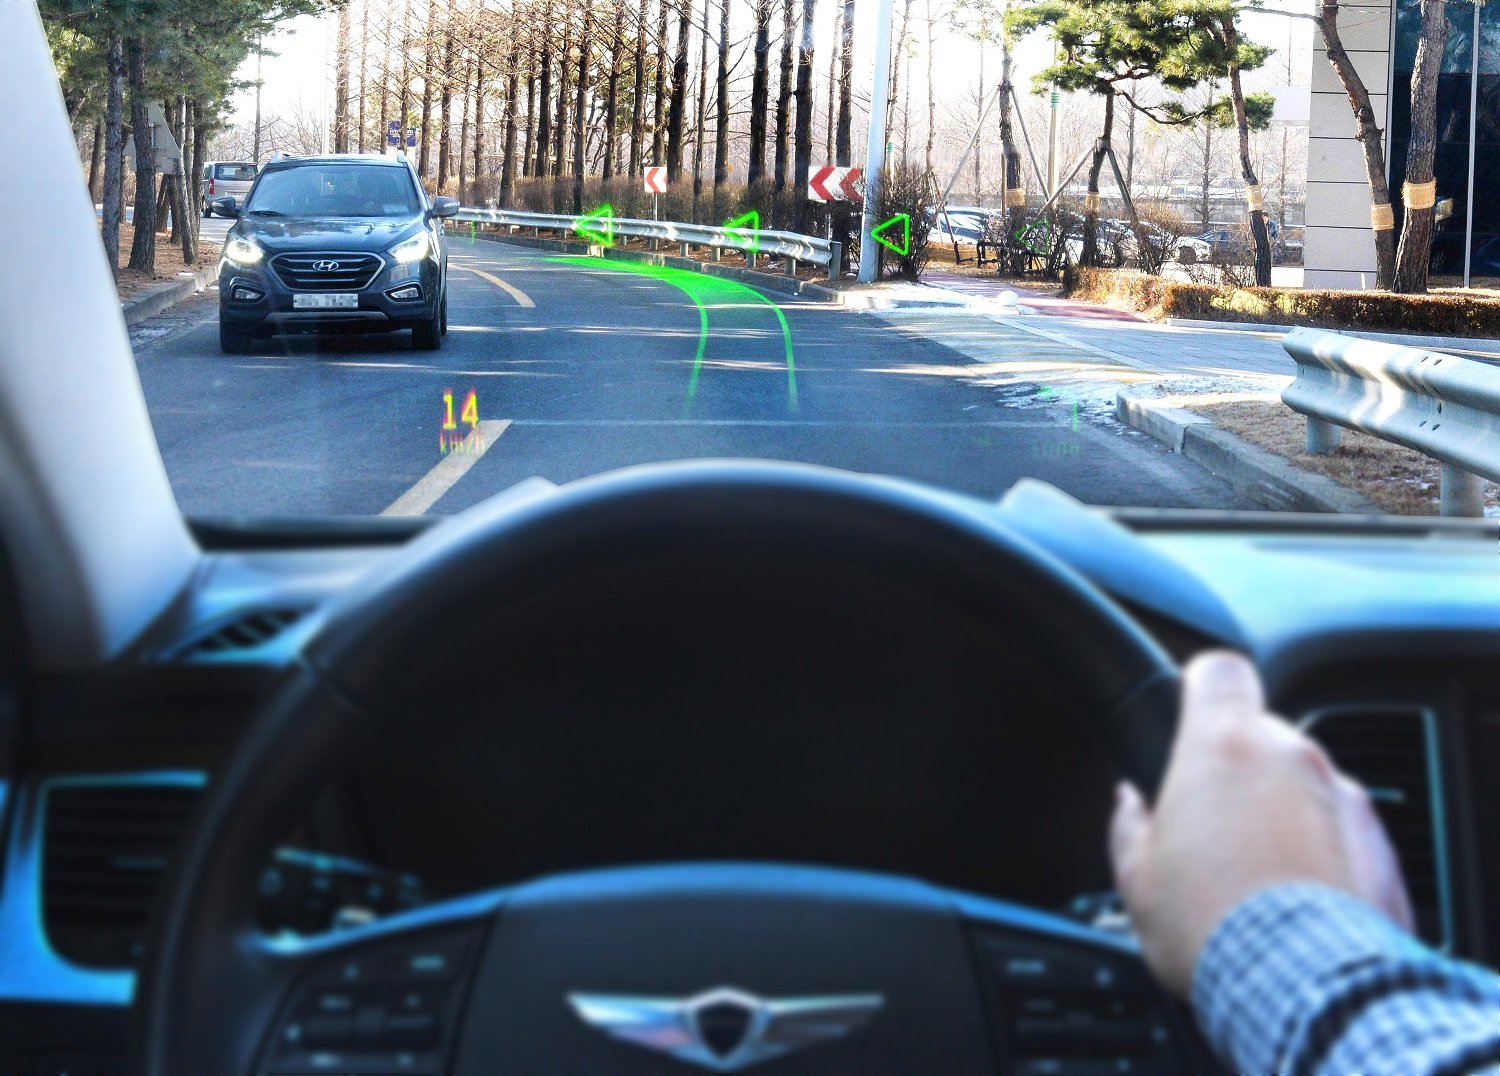 Hyundai a WayRay odhalily první navigační systém na světě, jenž disponuje systémem holografického zobrazování s rozšířenou realitou